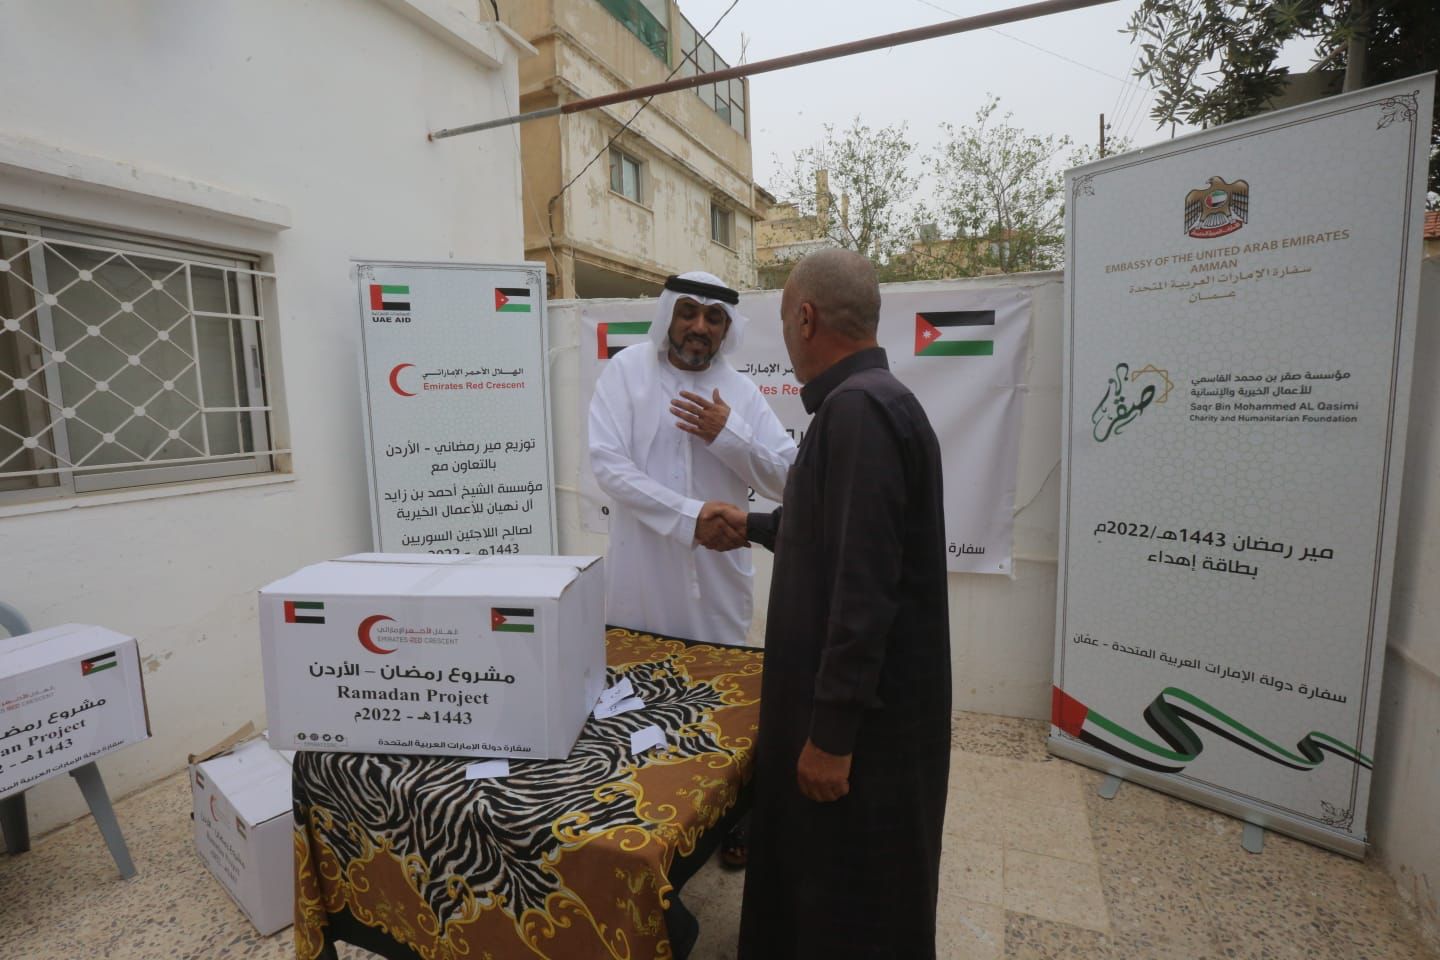  مبادرة توزيع المساعدات على مئات الأسر المستحقه تنظمها سفارة دولة الامارات  